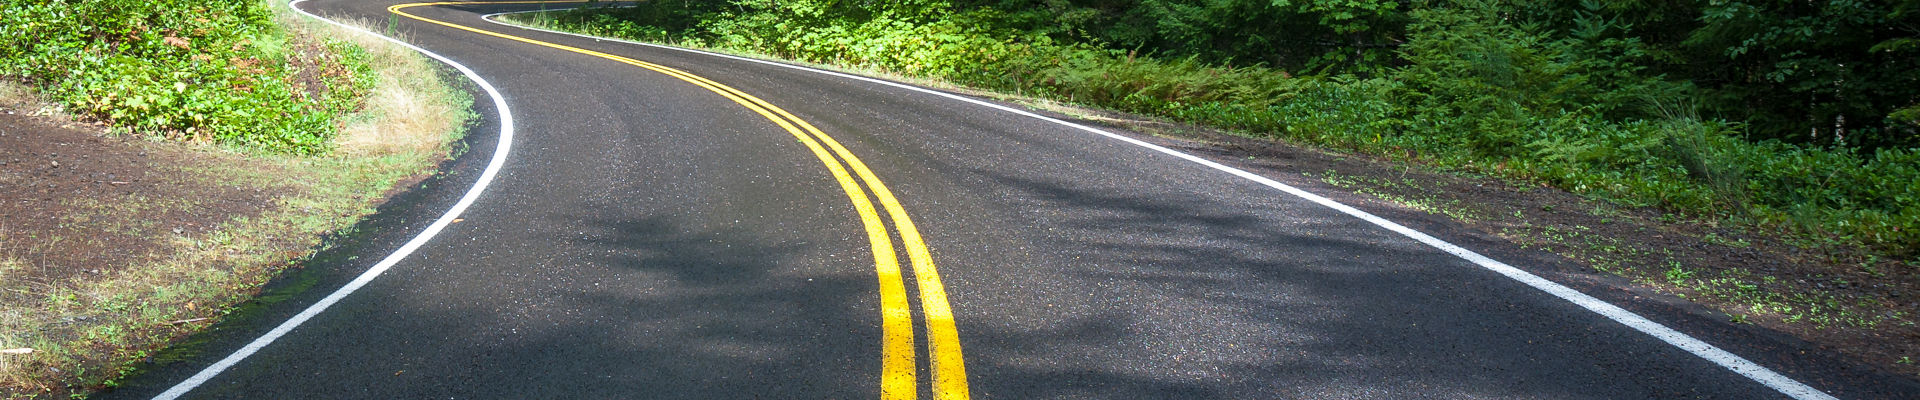 在松林的中部用黄色道路标记缠绕黑色沥青路面